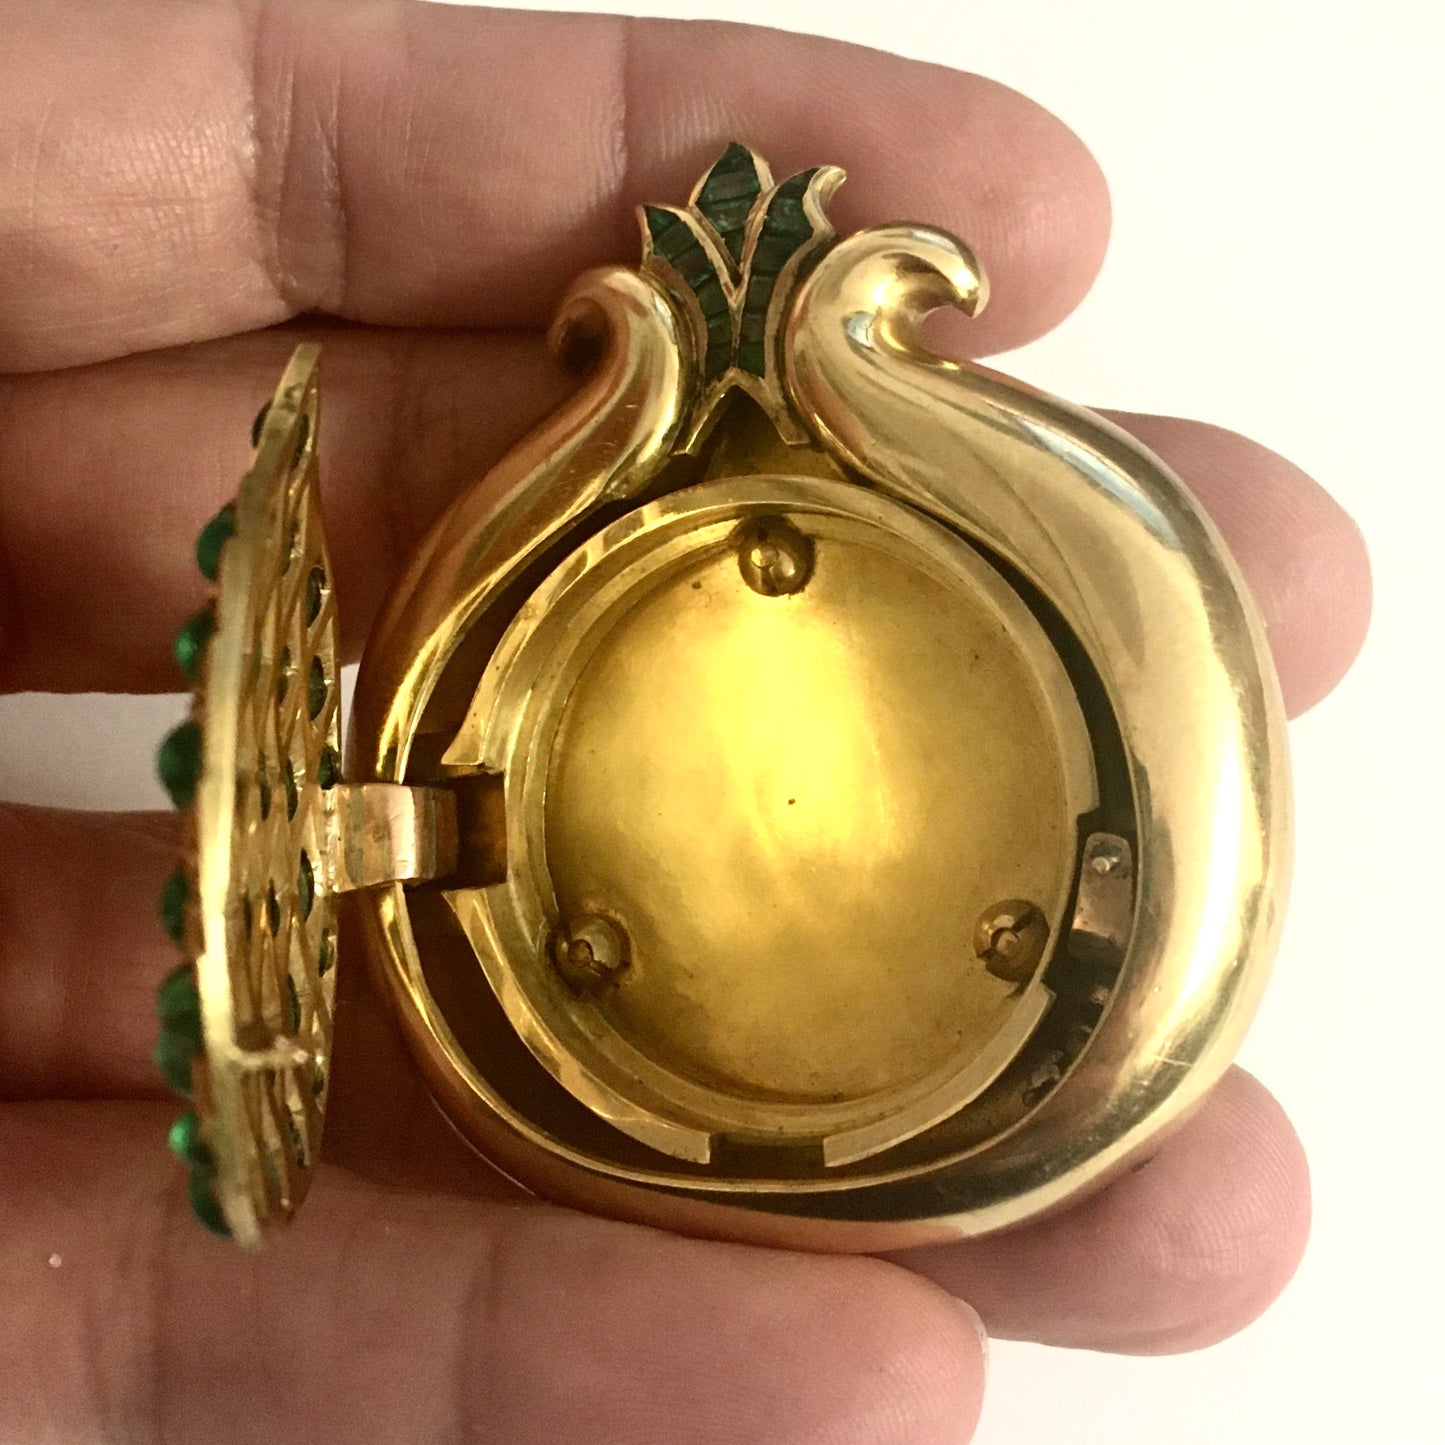 Rene Boivin 1930s 18KT Yellow Gold Emerald Pomegranate Brooch open